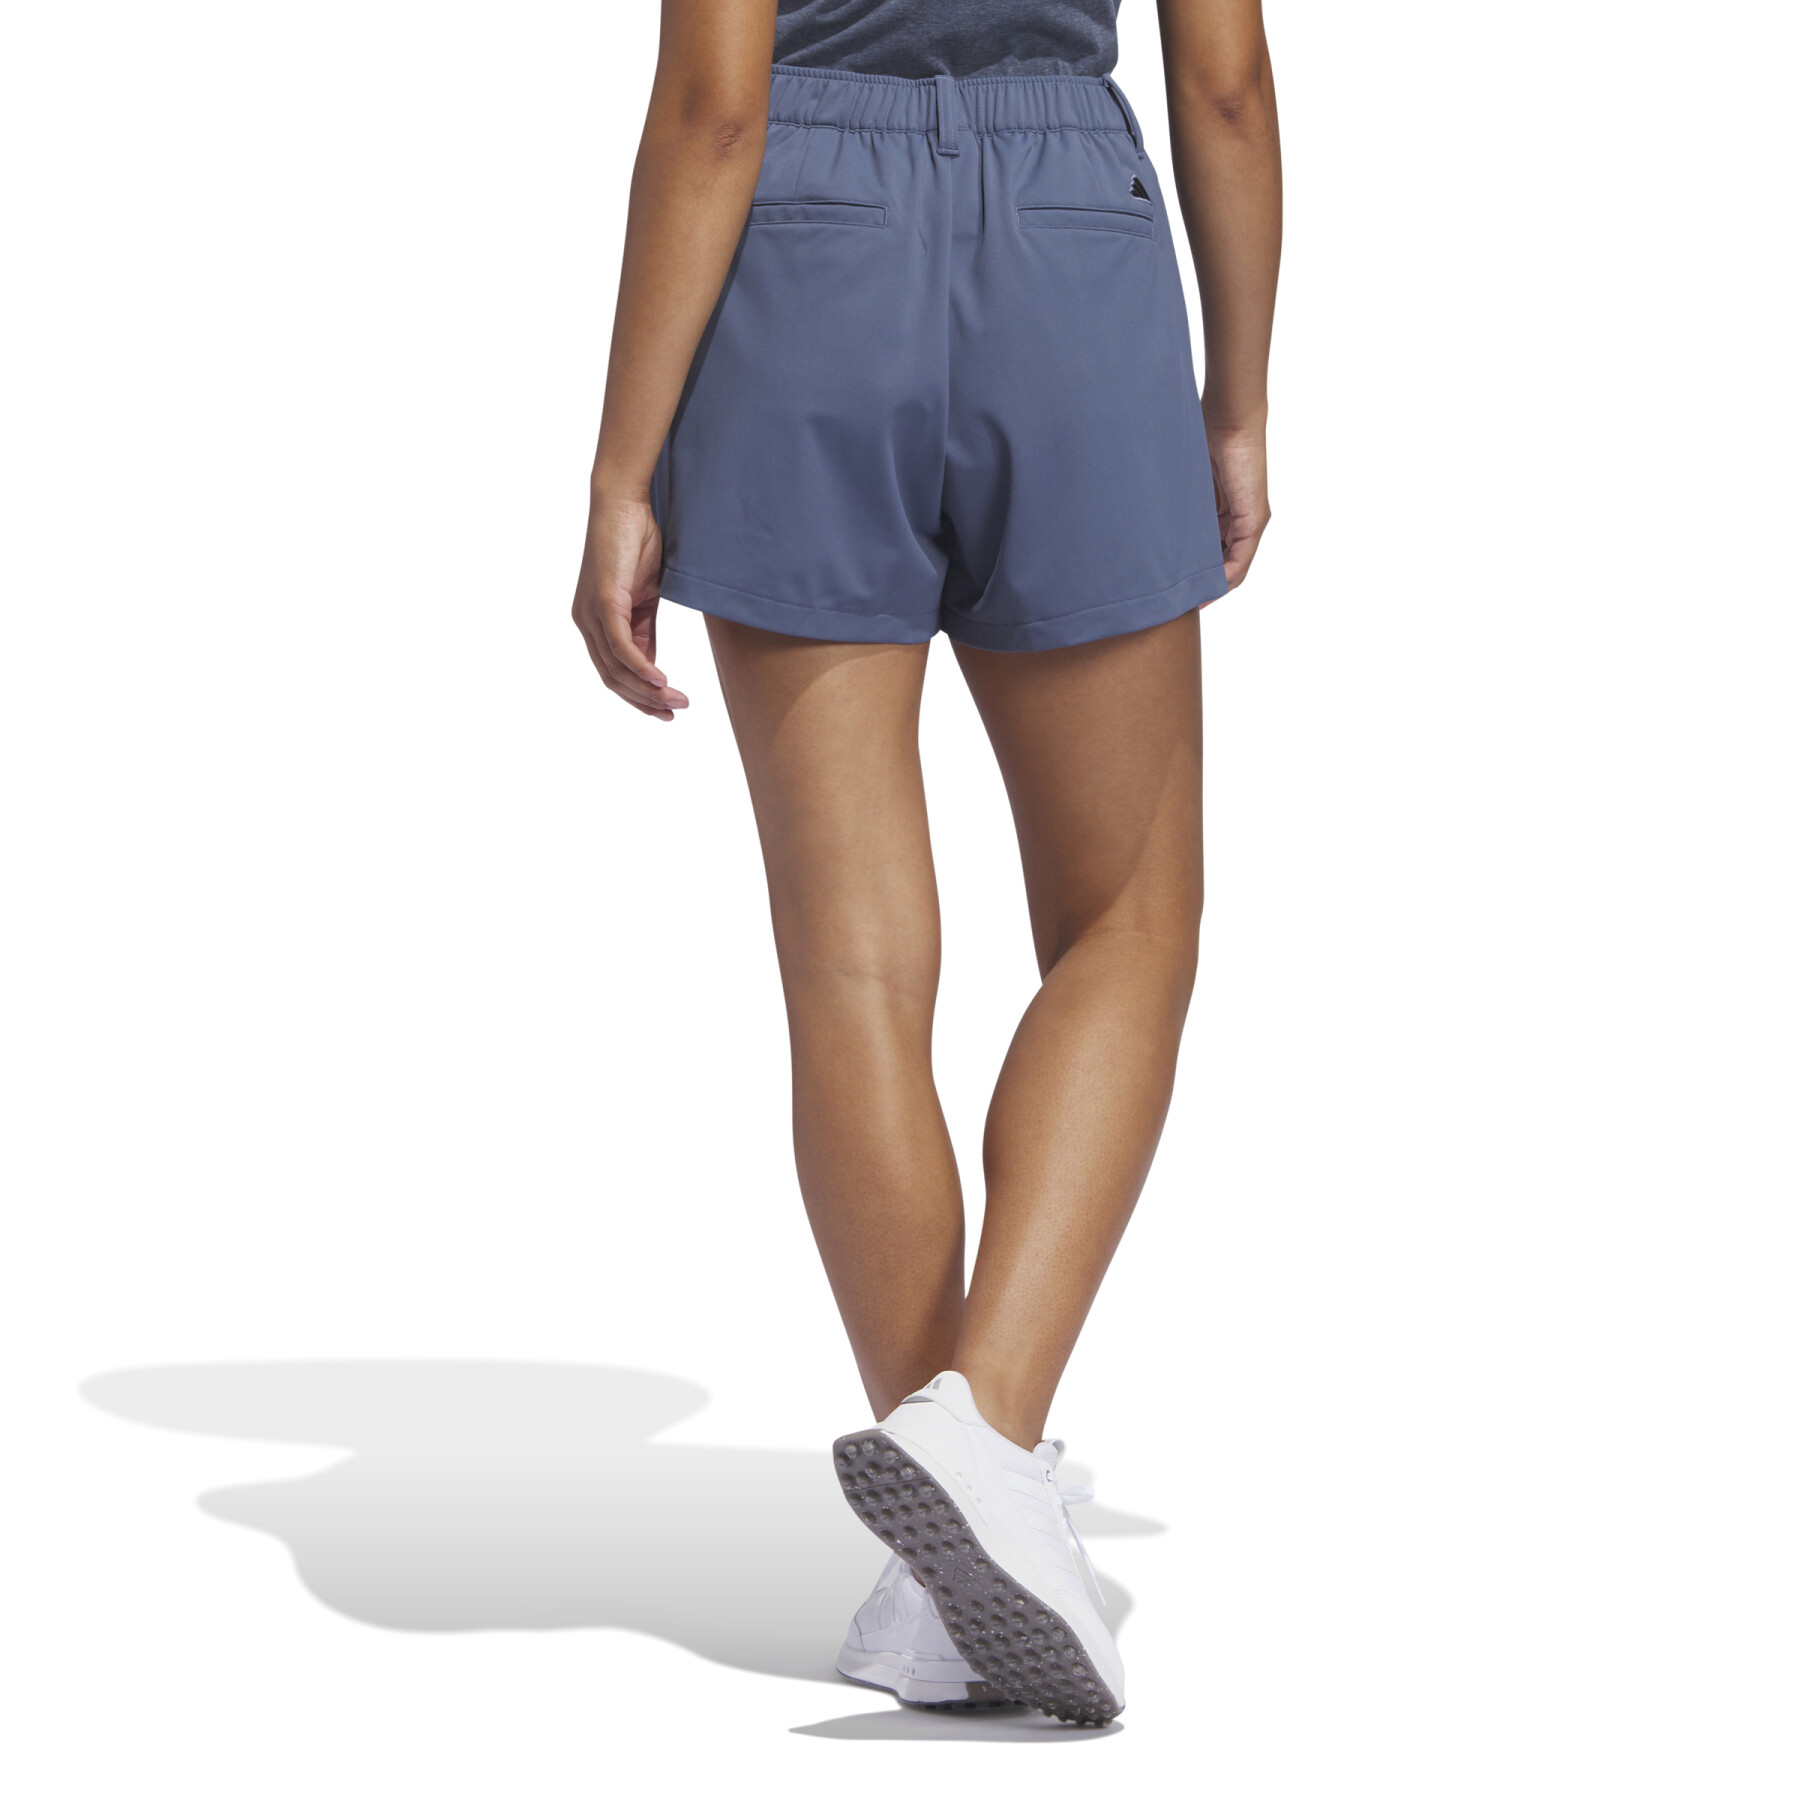 Geplooide shorts voor vrouwen adidas Go-To